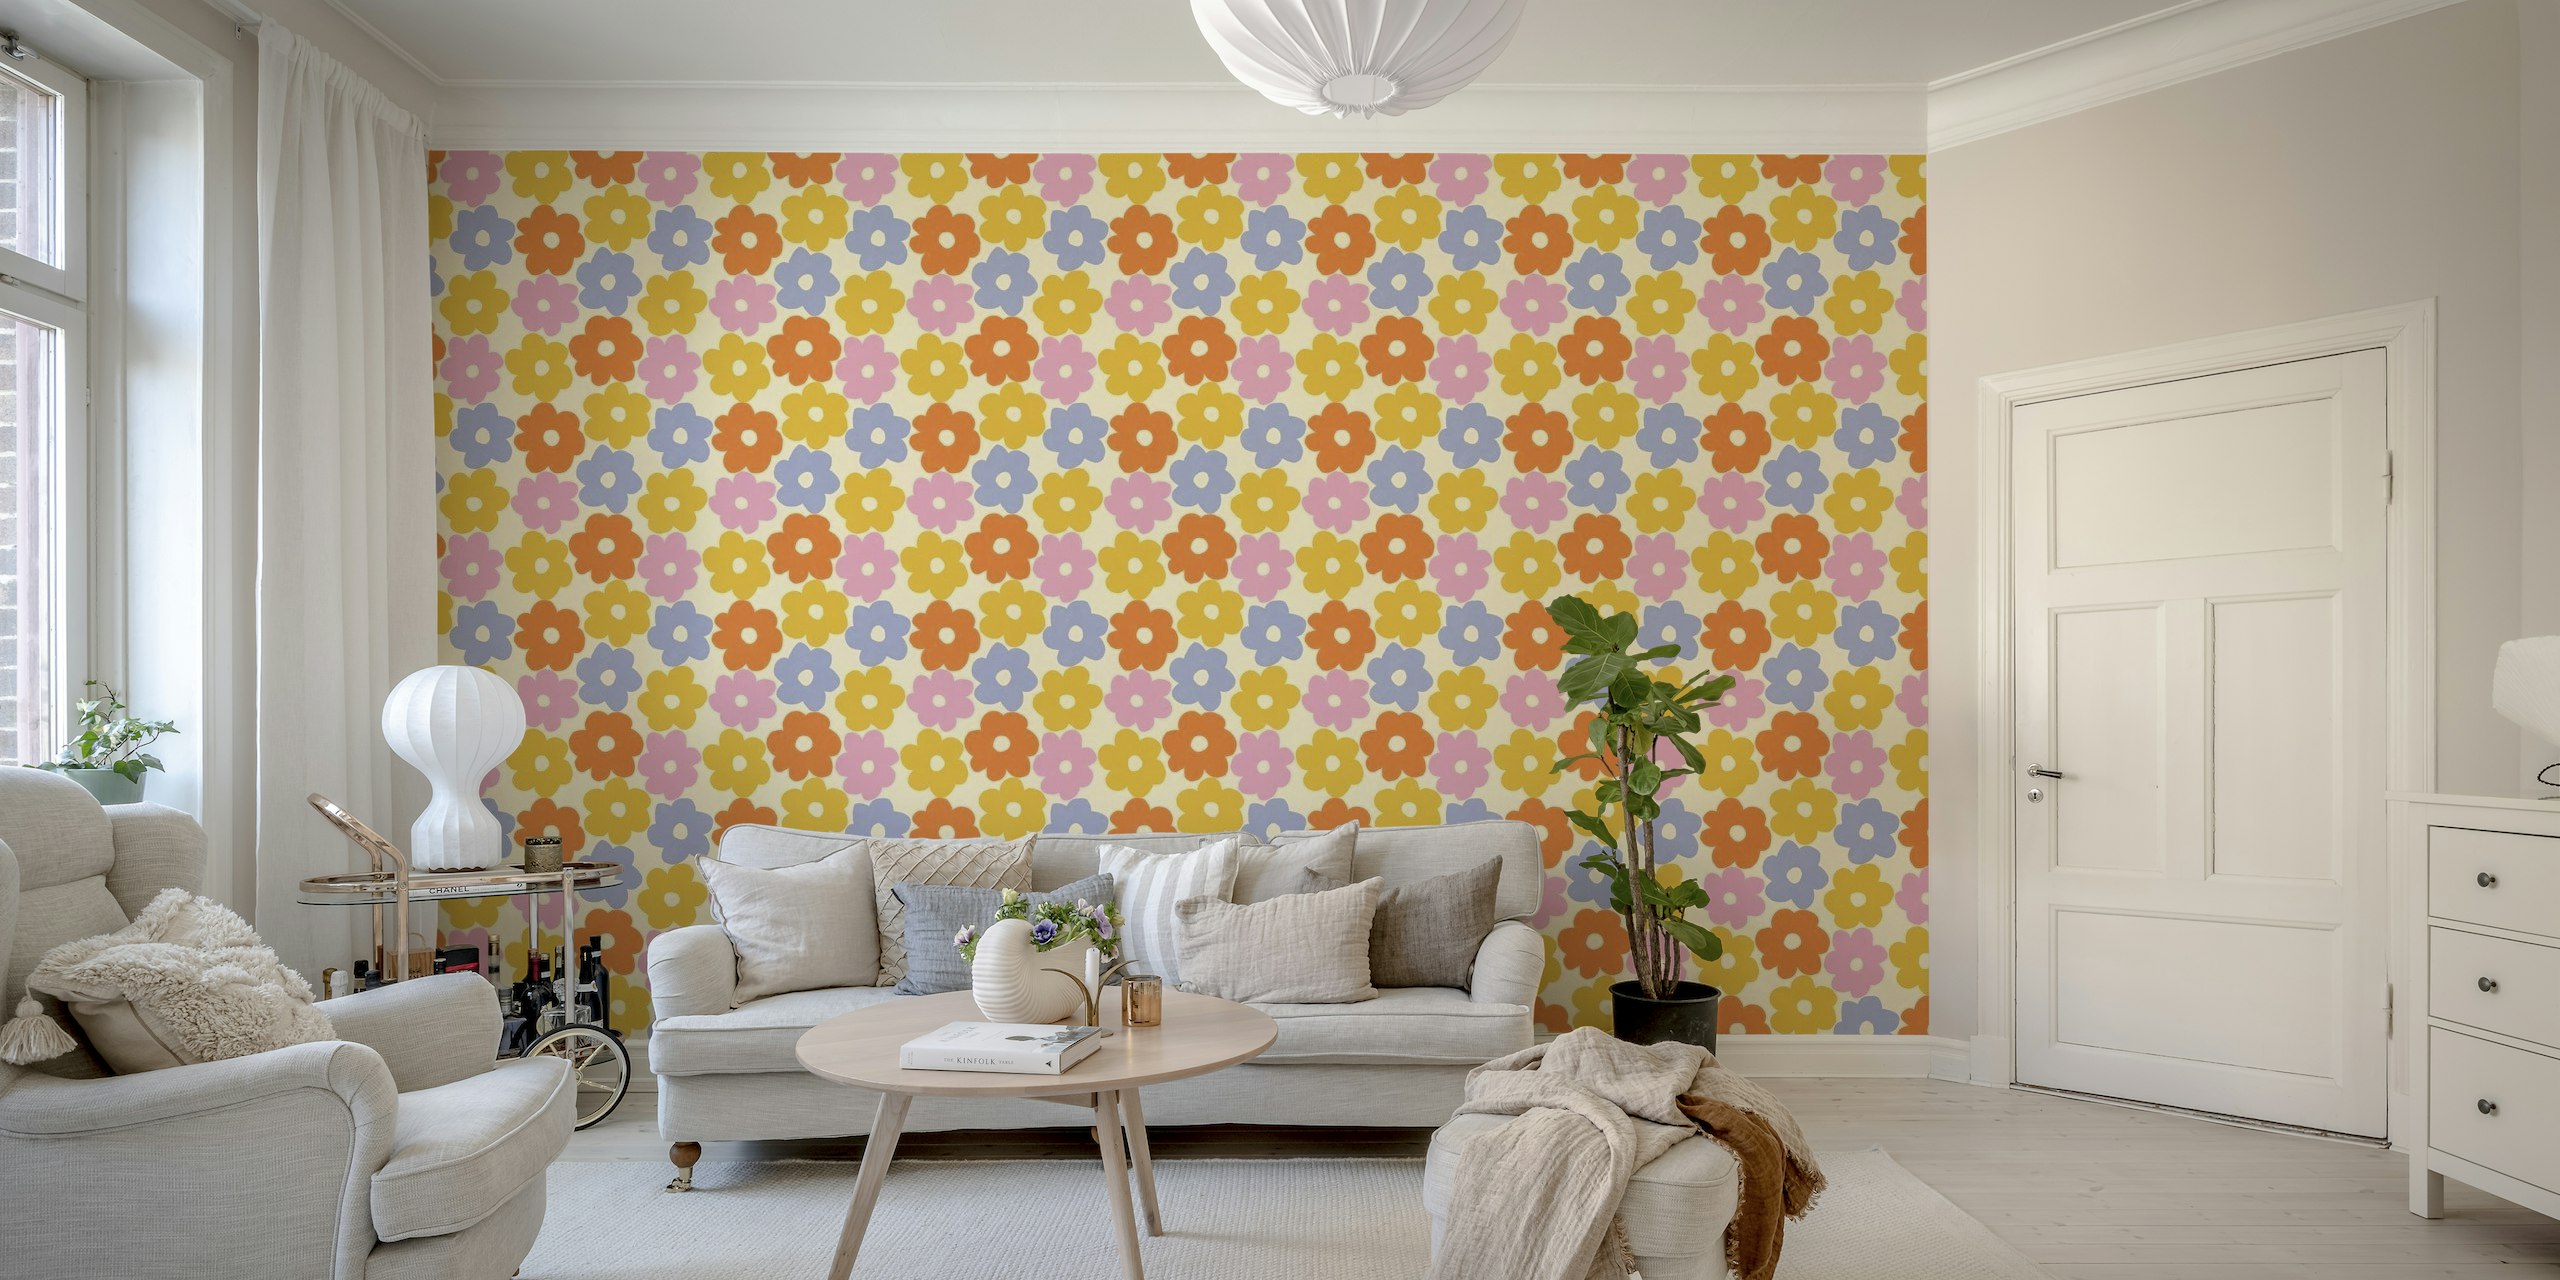 fotomural vinílico de parede com padrão de flor simples em cor pastel e fundo neutro quente